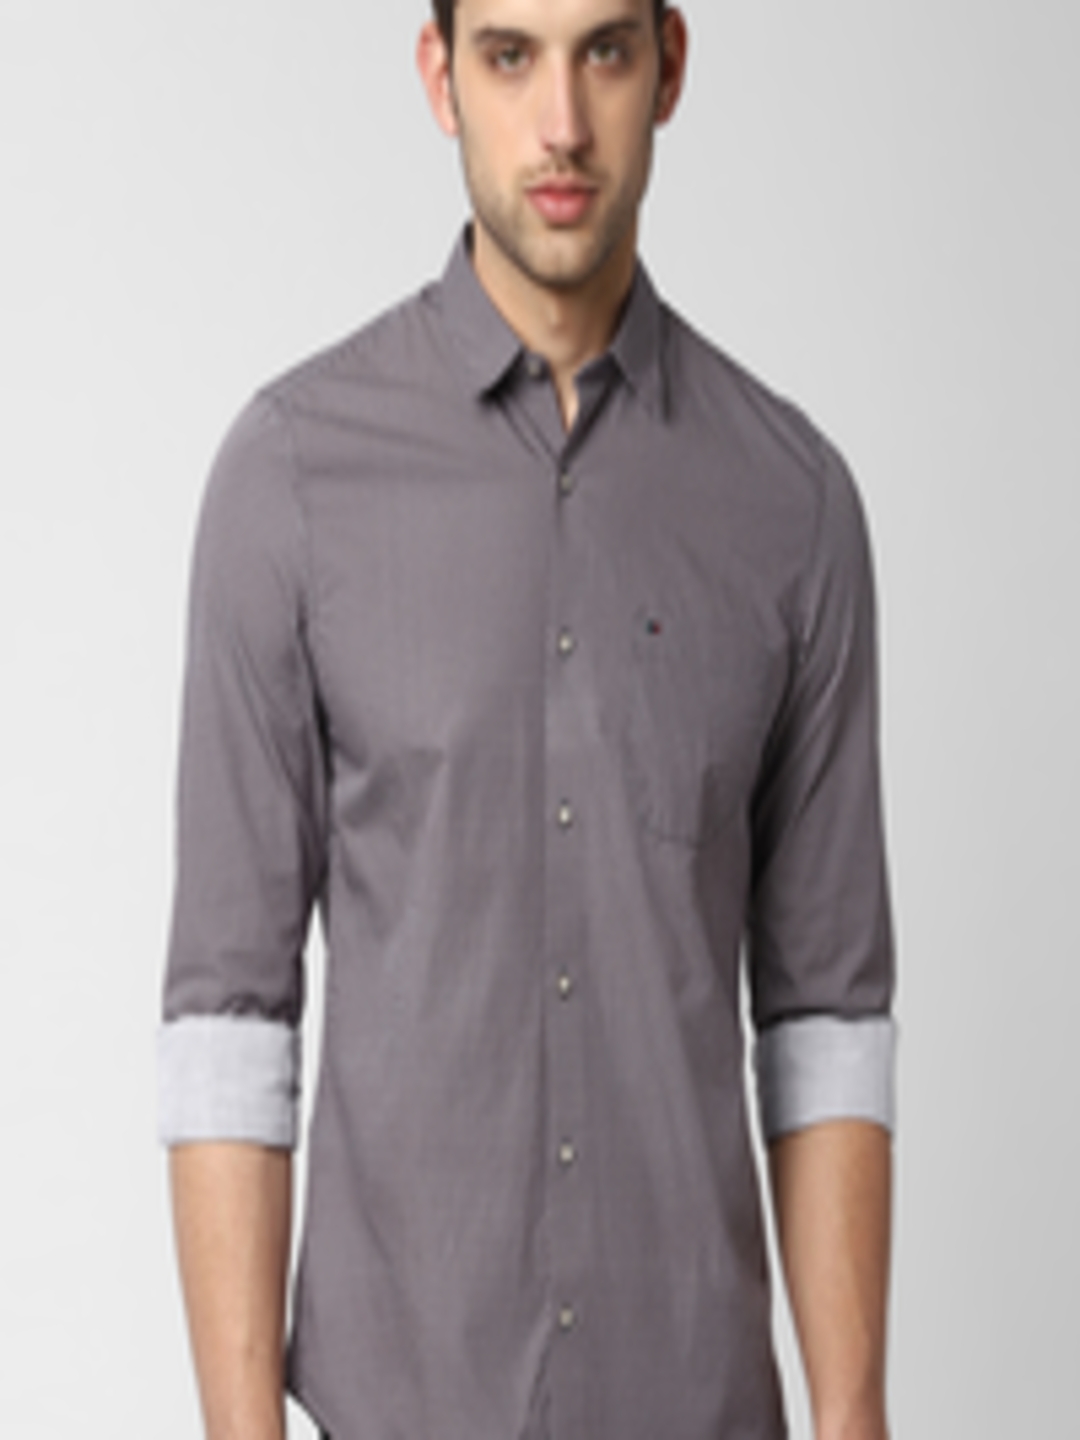 Buy Peter England Casuals Men Grey Slim Fit Printed Casual Shirt ...